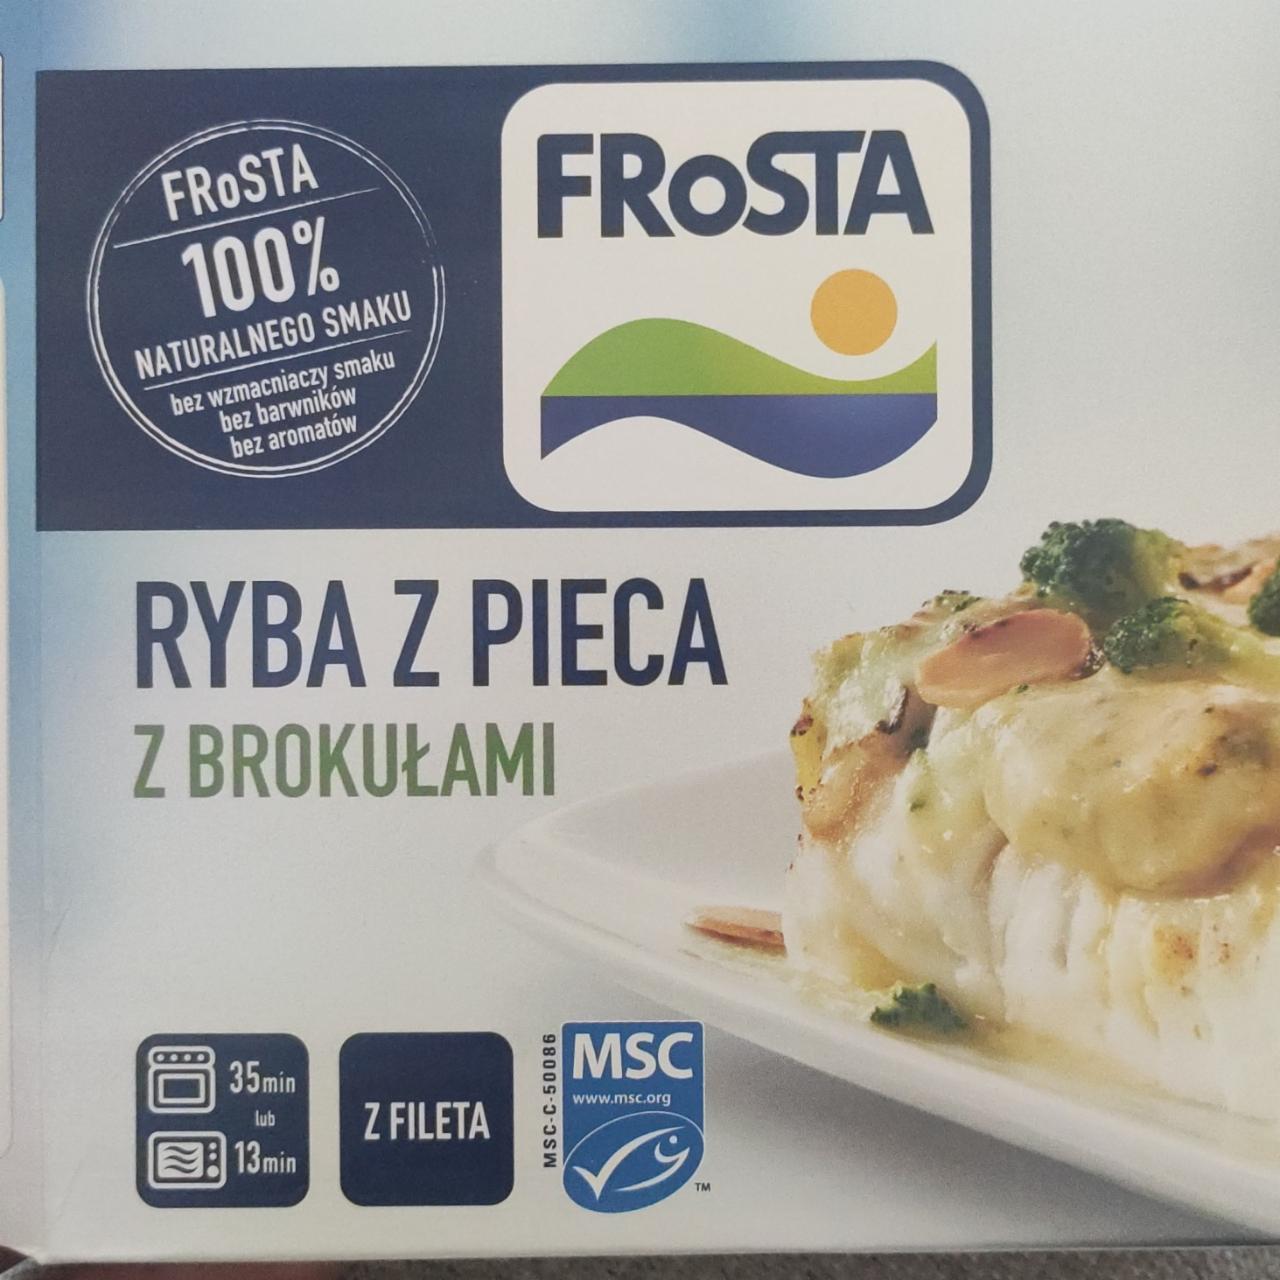 Фото - Ryba z pieca z brokułami FRoSTA